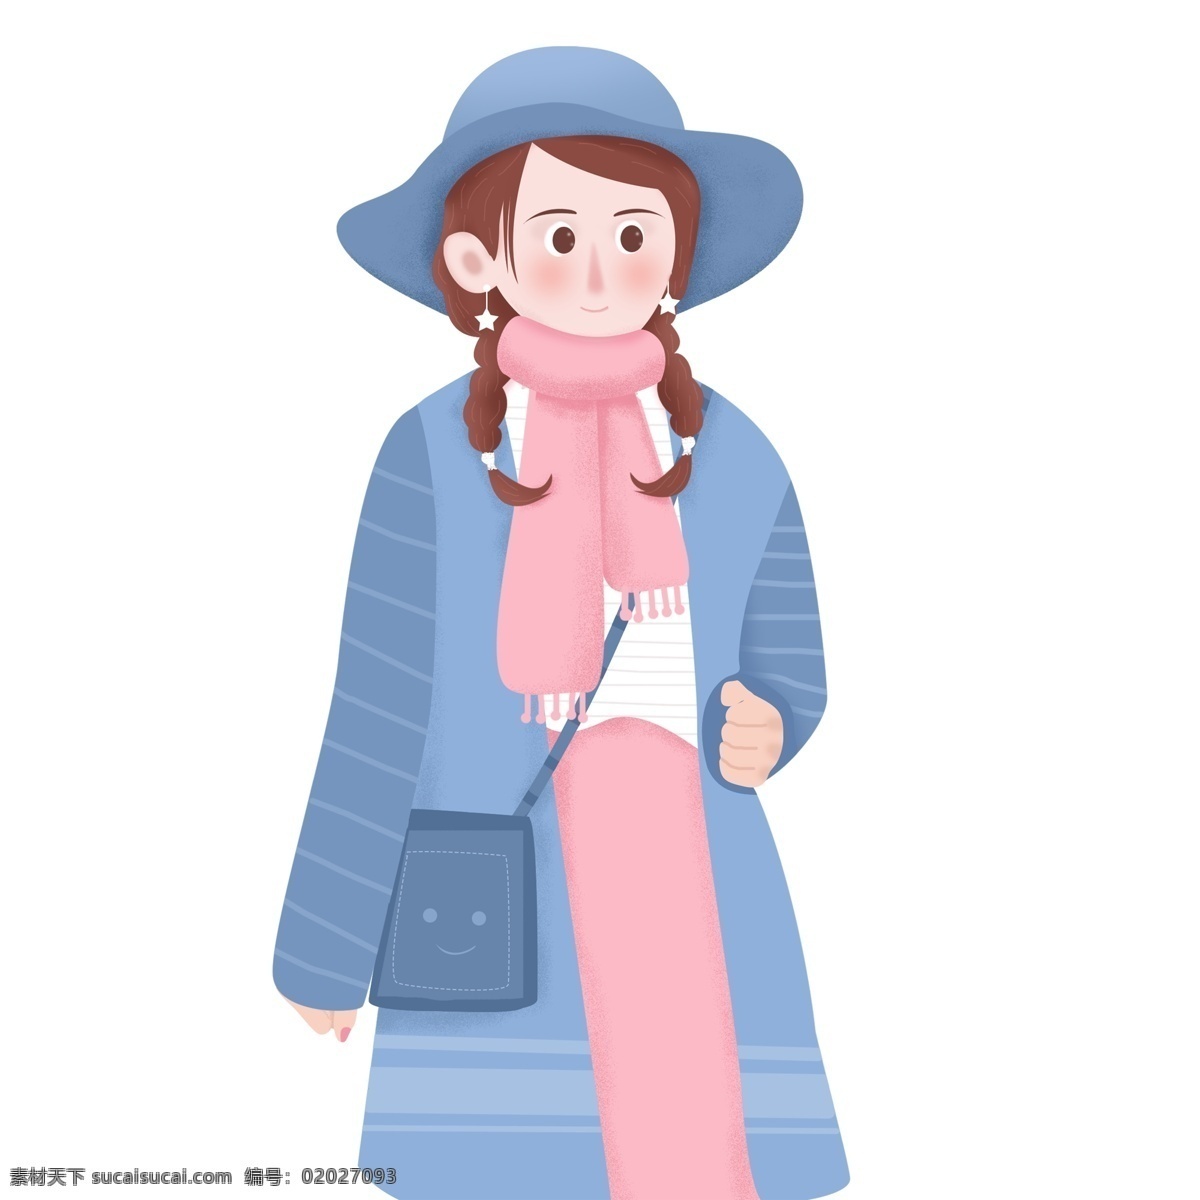 小 清新 冬季 带 蓝色 帽子 穿着 大衣 女孩 小清新 人物 插画 卡通 文艺女生 粉色 围巾 冬天